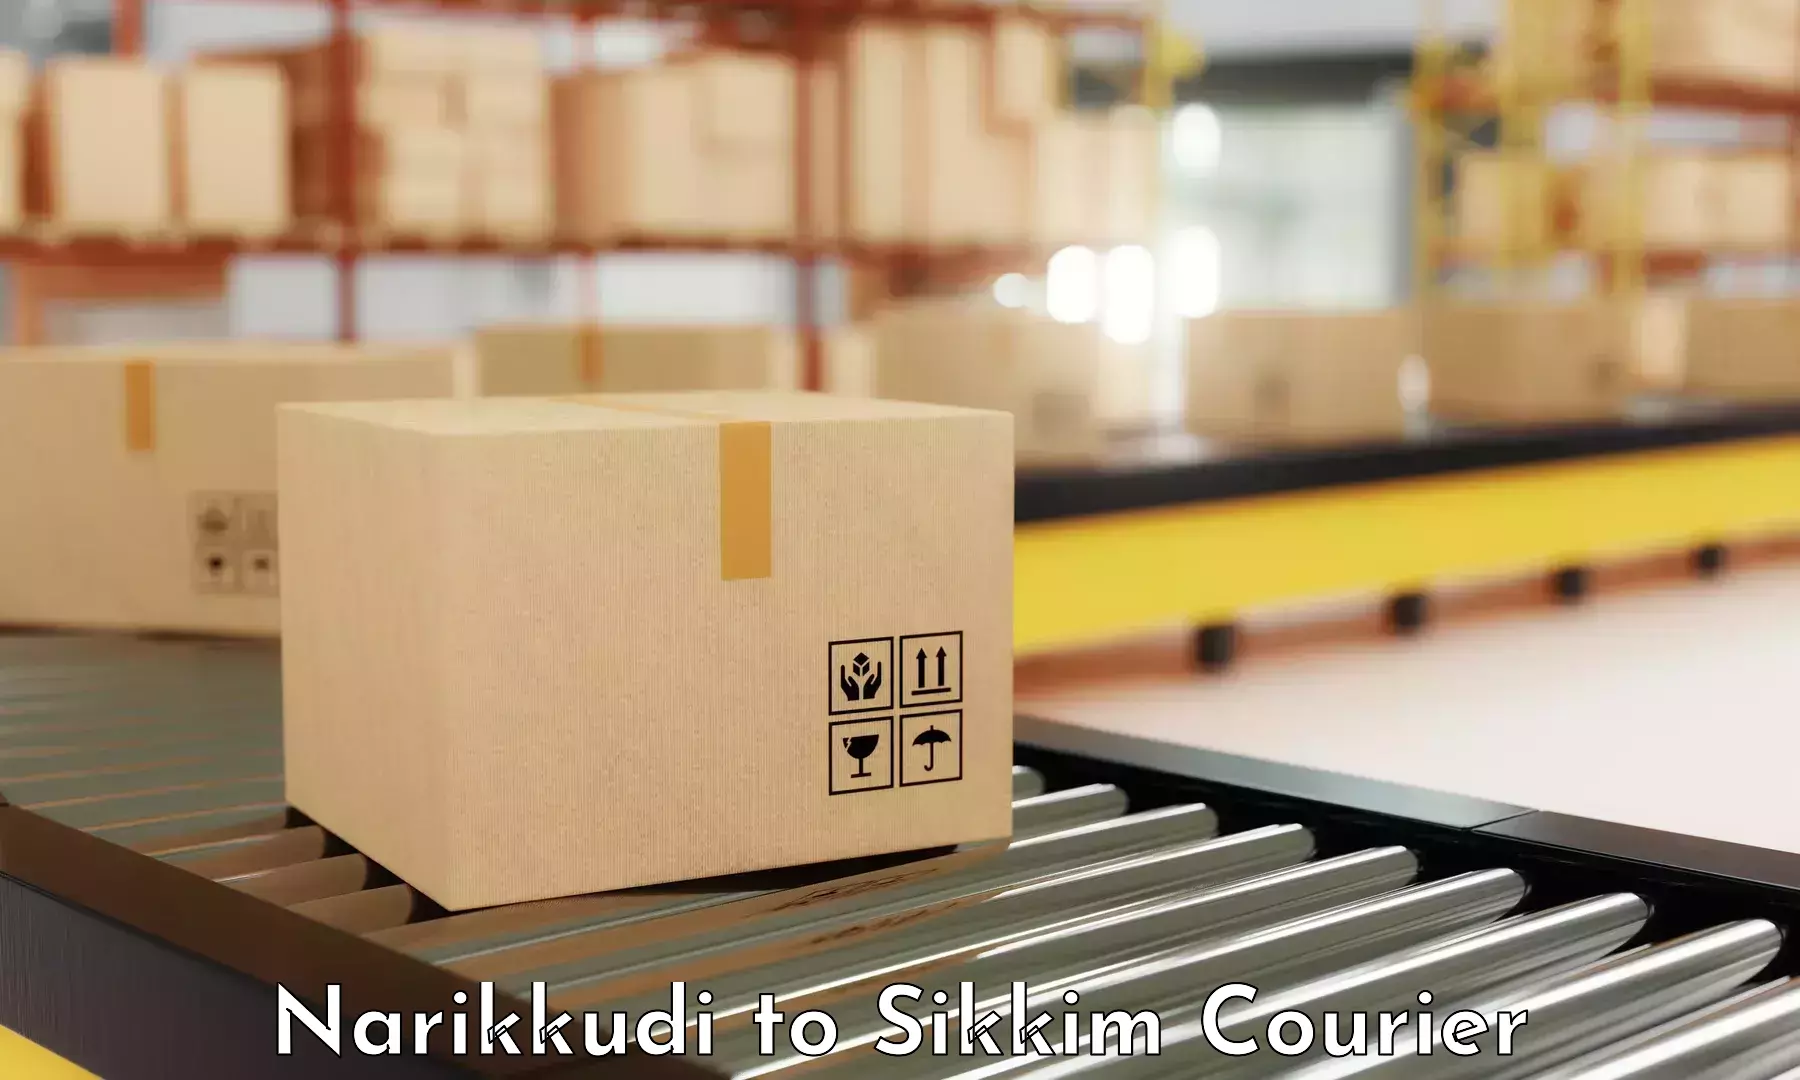 International courier rates Narikkudi to NIT Sikkim